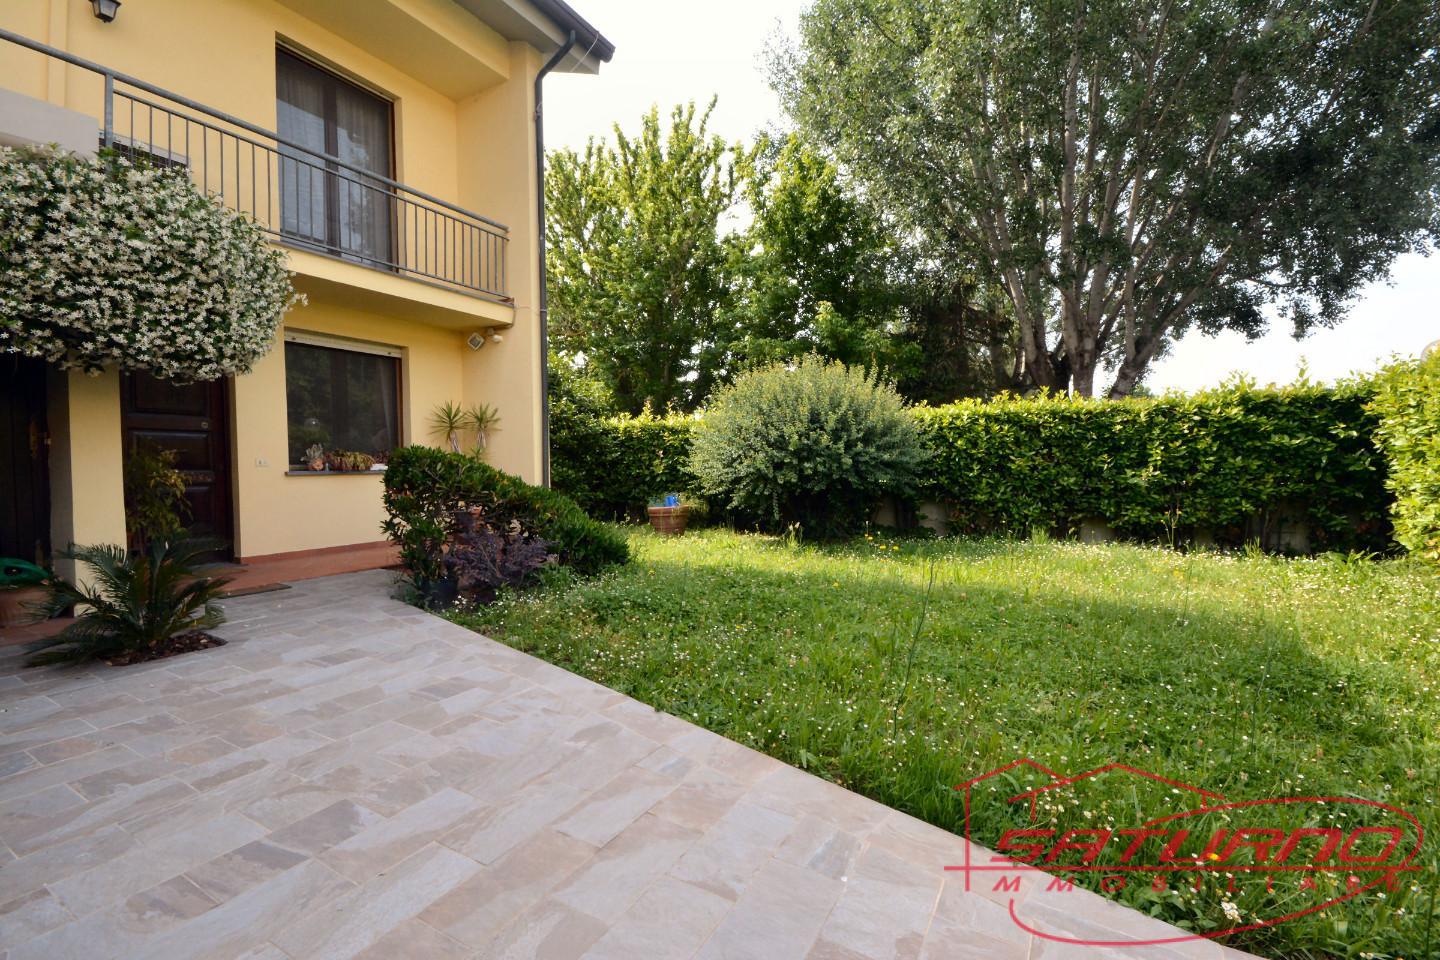 Villa con giardino, Lucca antraccoli